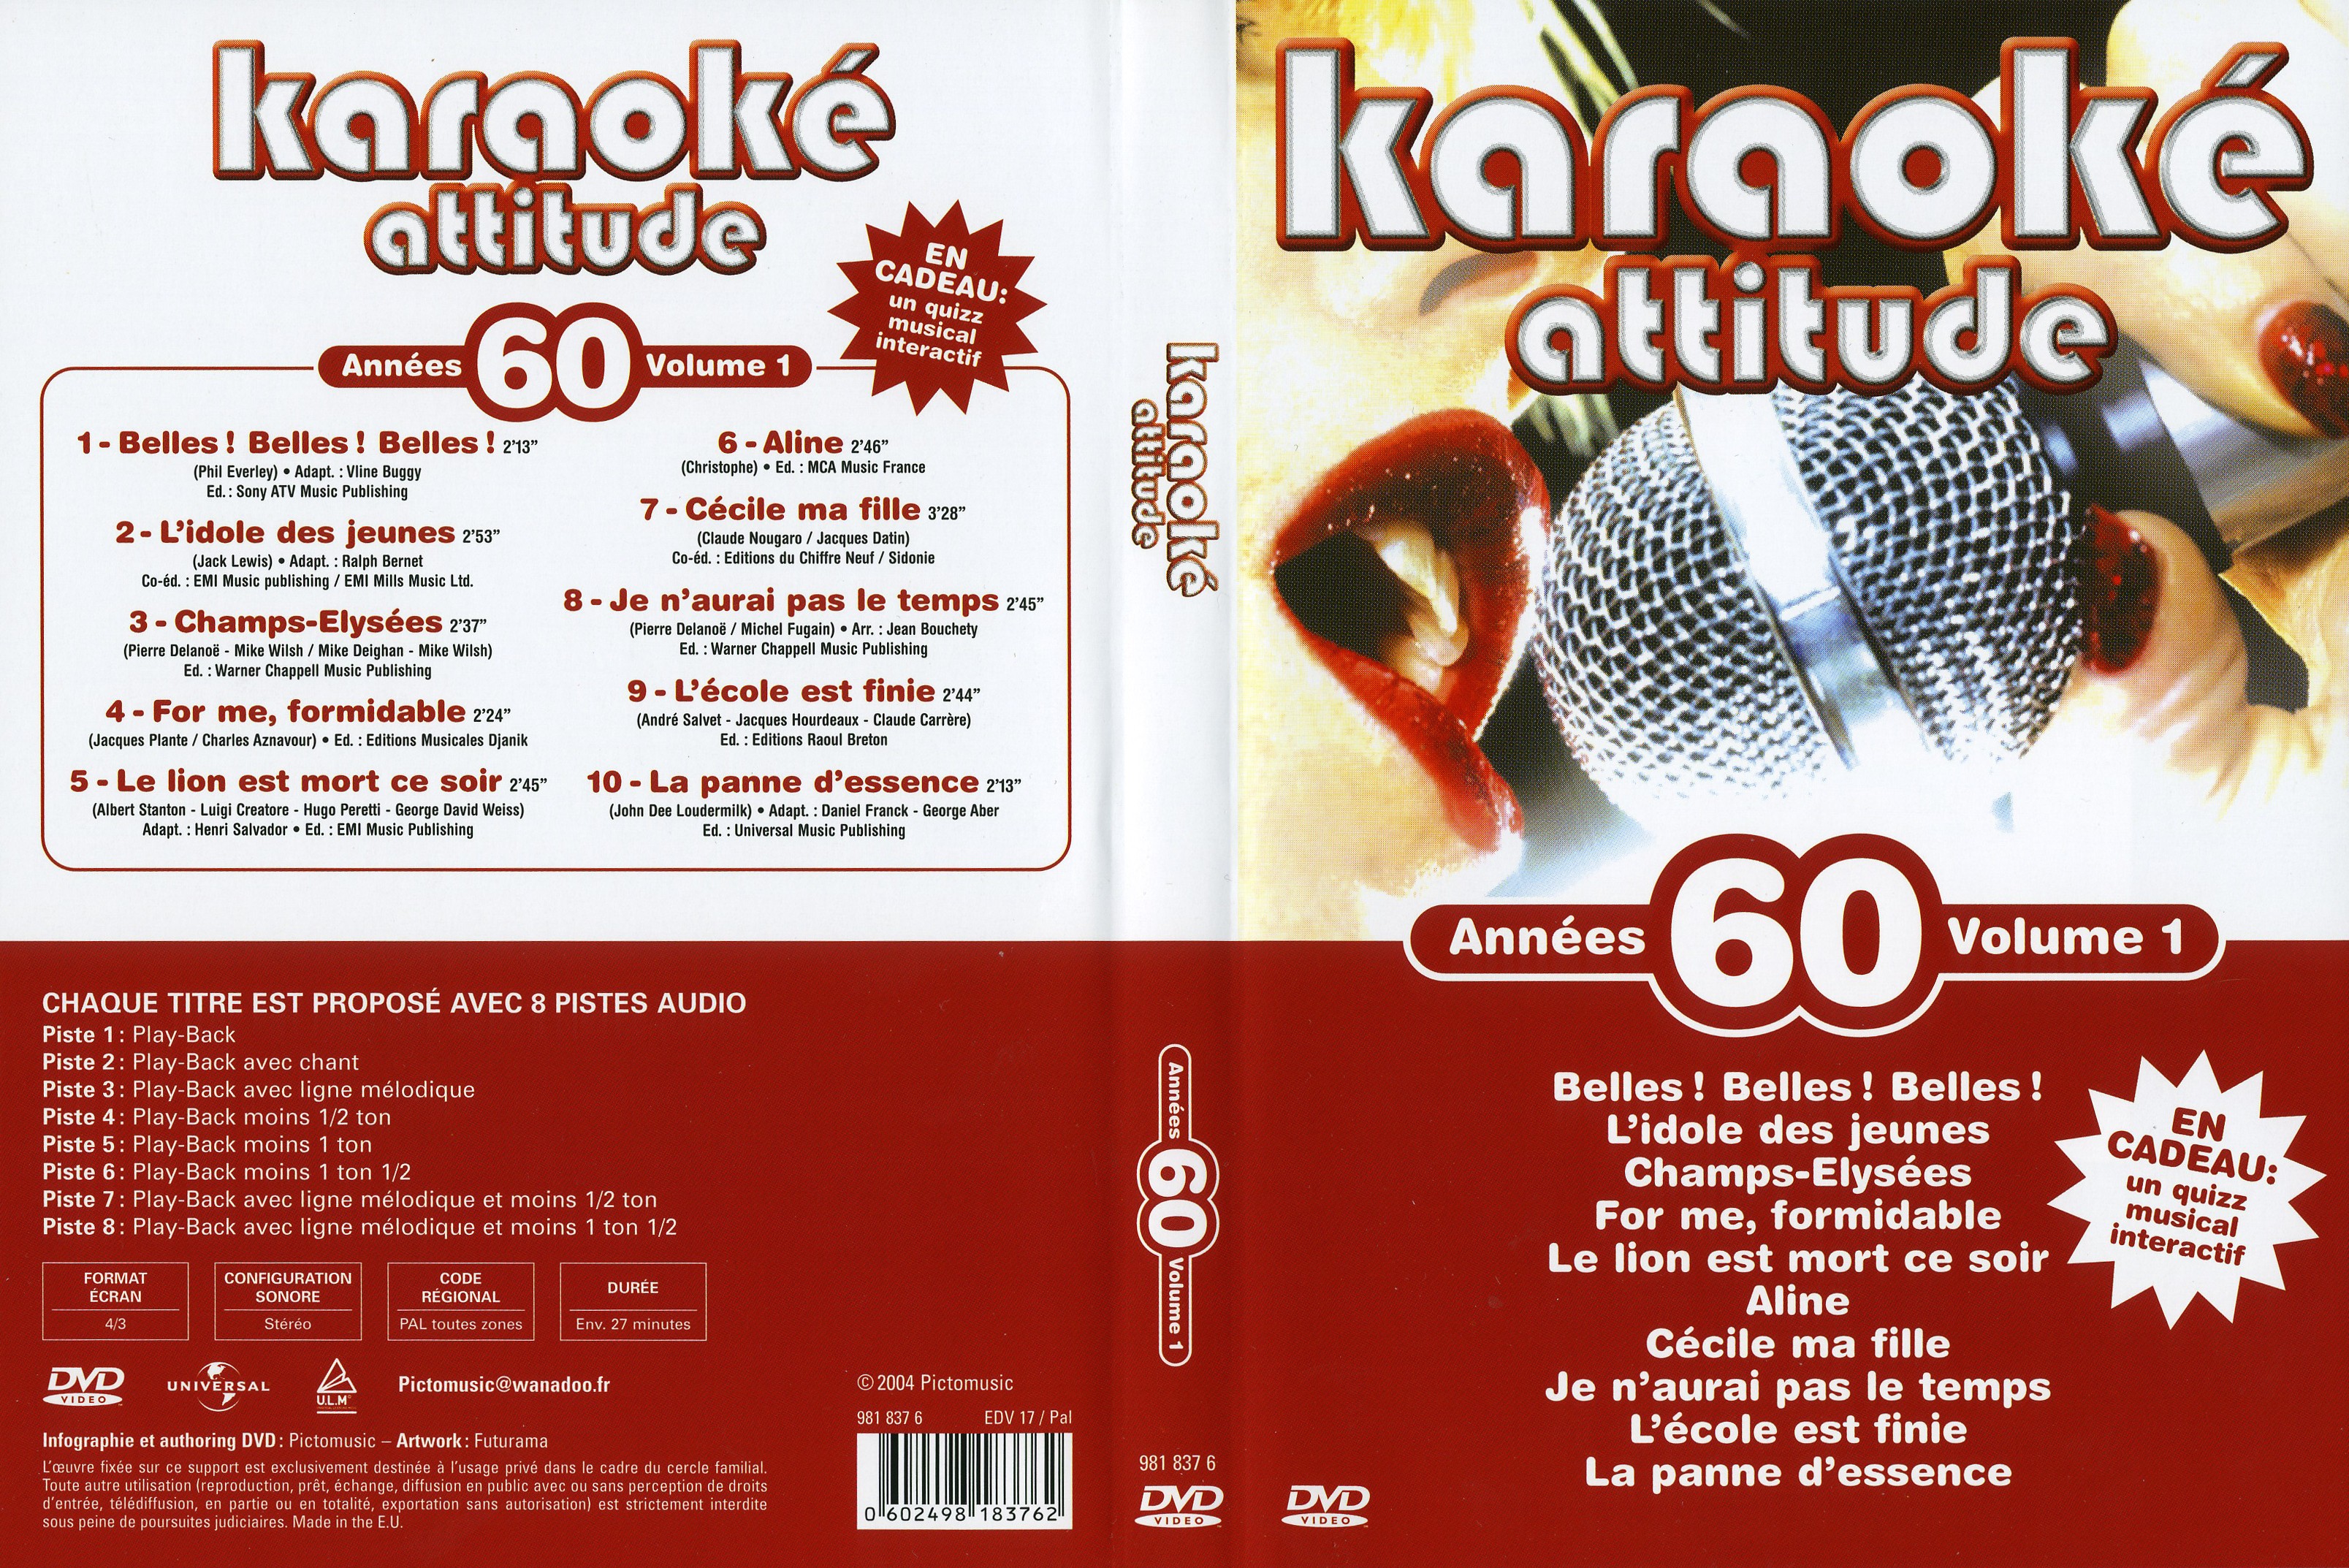 Jaquette DVD de Karaoké Attitude Années 80 vol 1 - Cinéma Passion